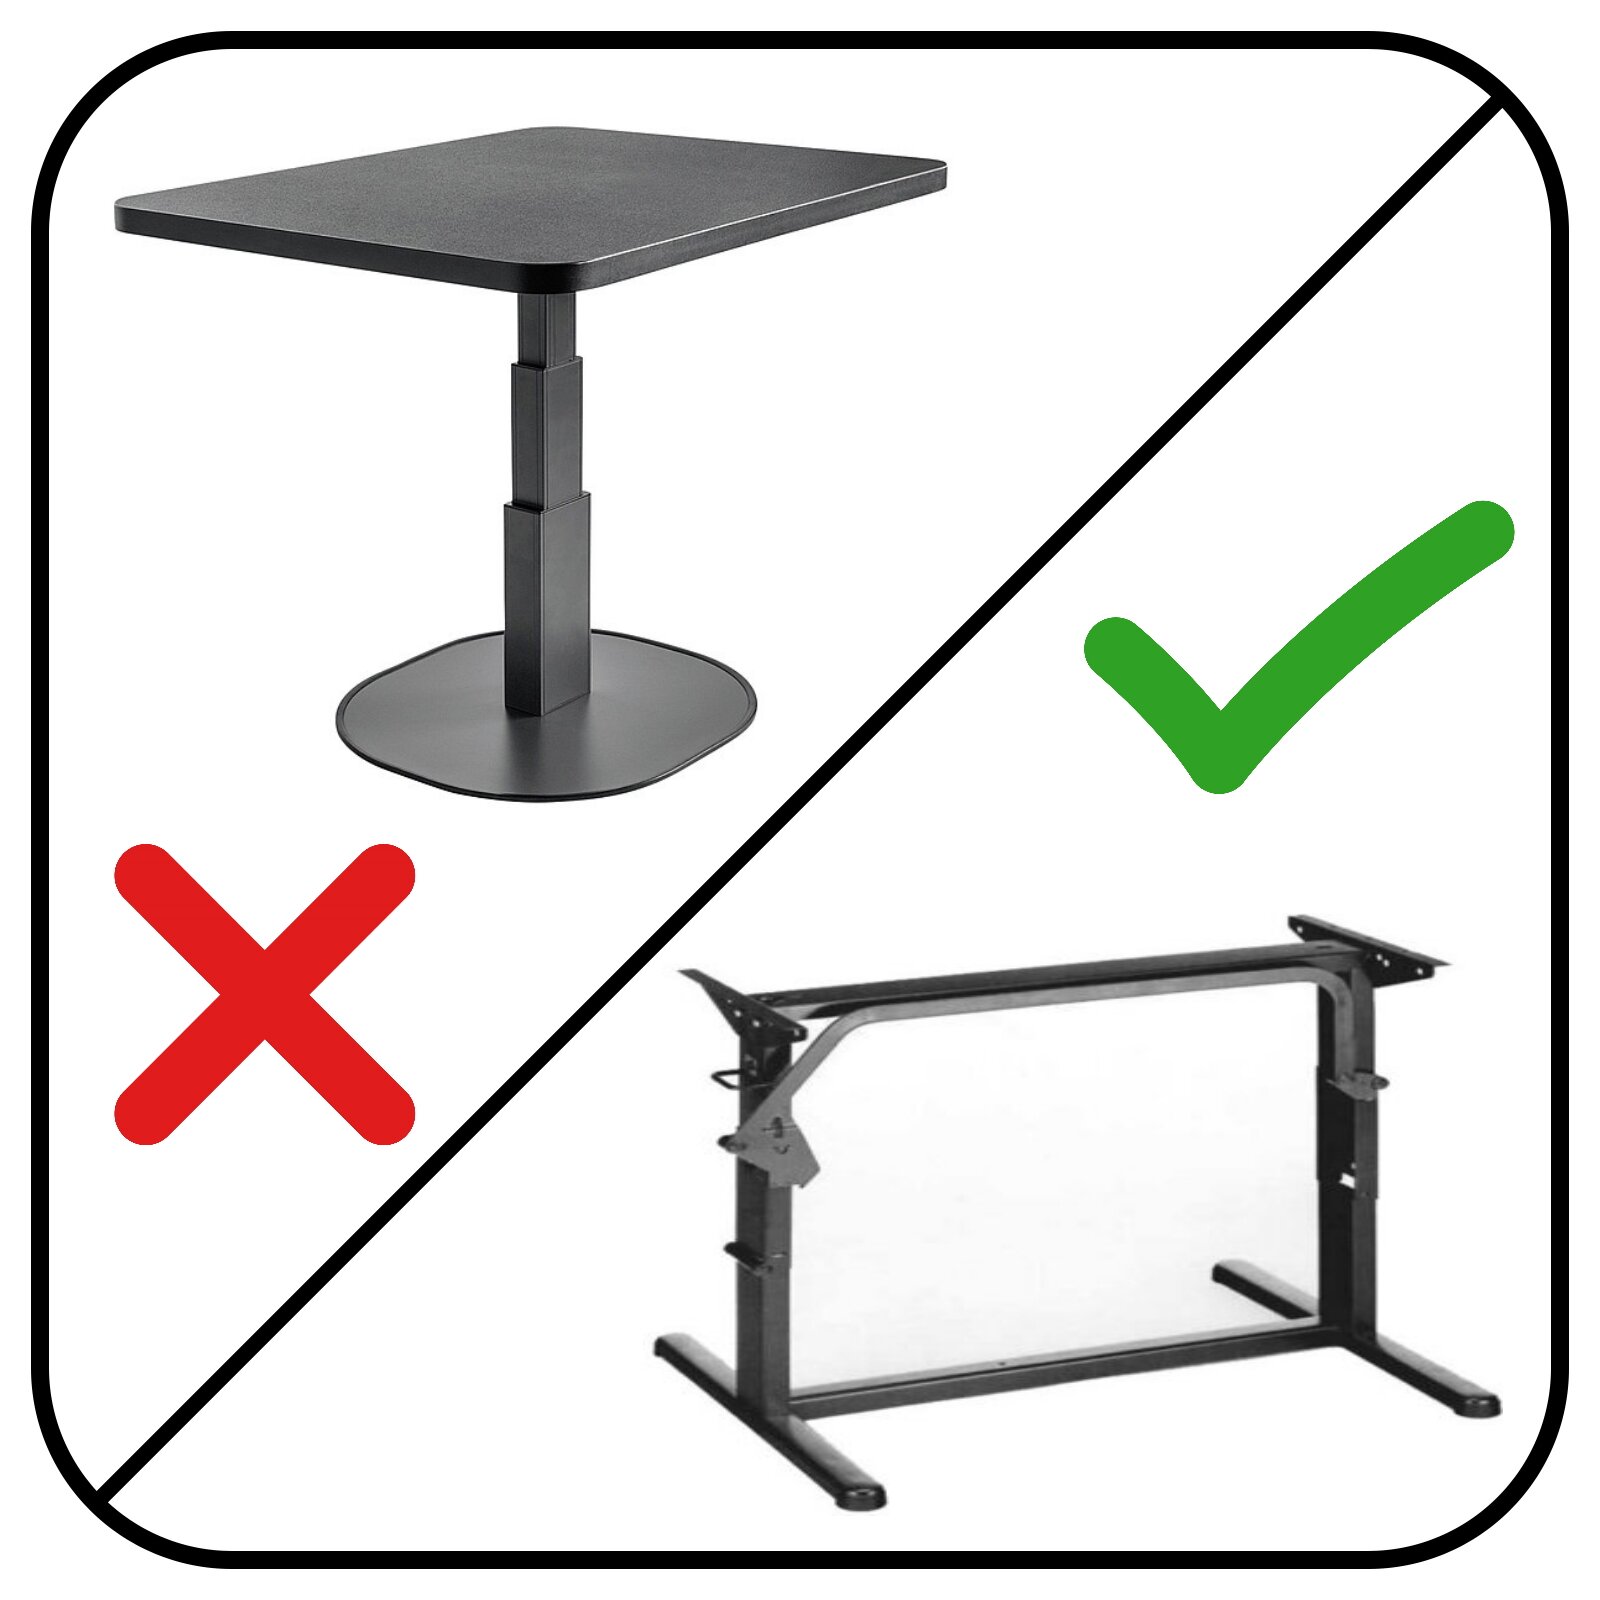 Tische mit H-Gestell sind für eine Fußbodenheizung geeignet, Sockeltische jedoch nicht